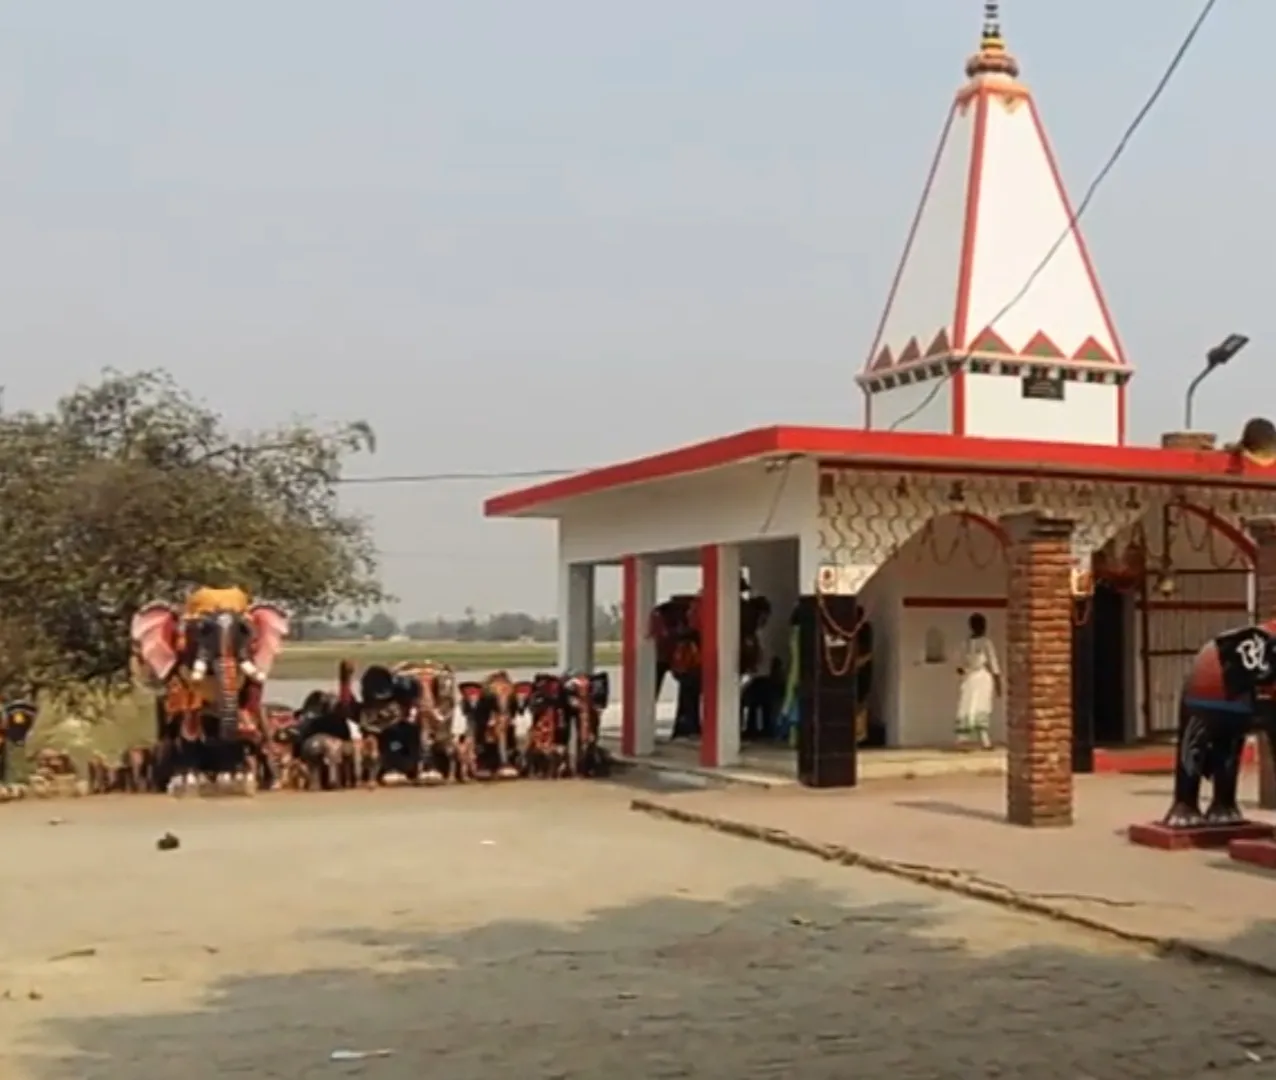  सर घाट माता मंदिर बस्ती - Sarghat Mata Mandir Basti